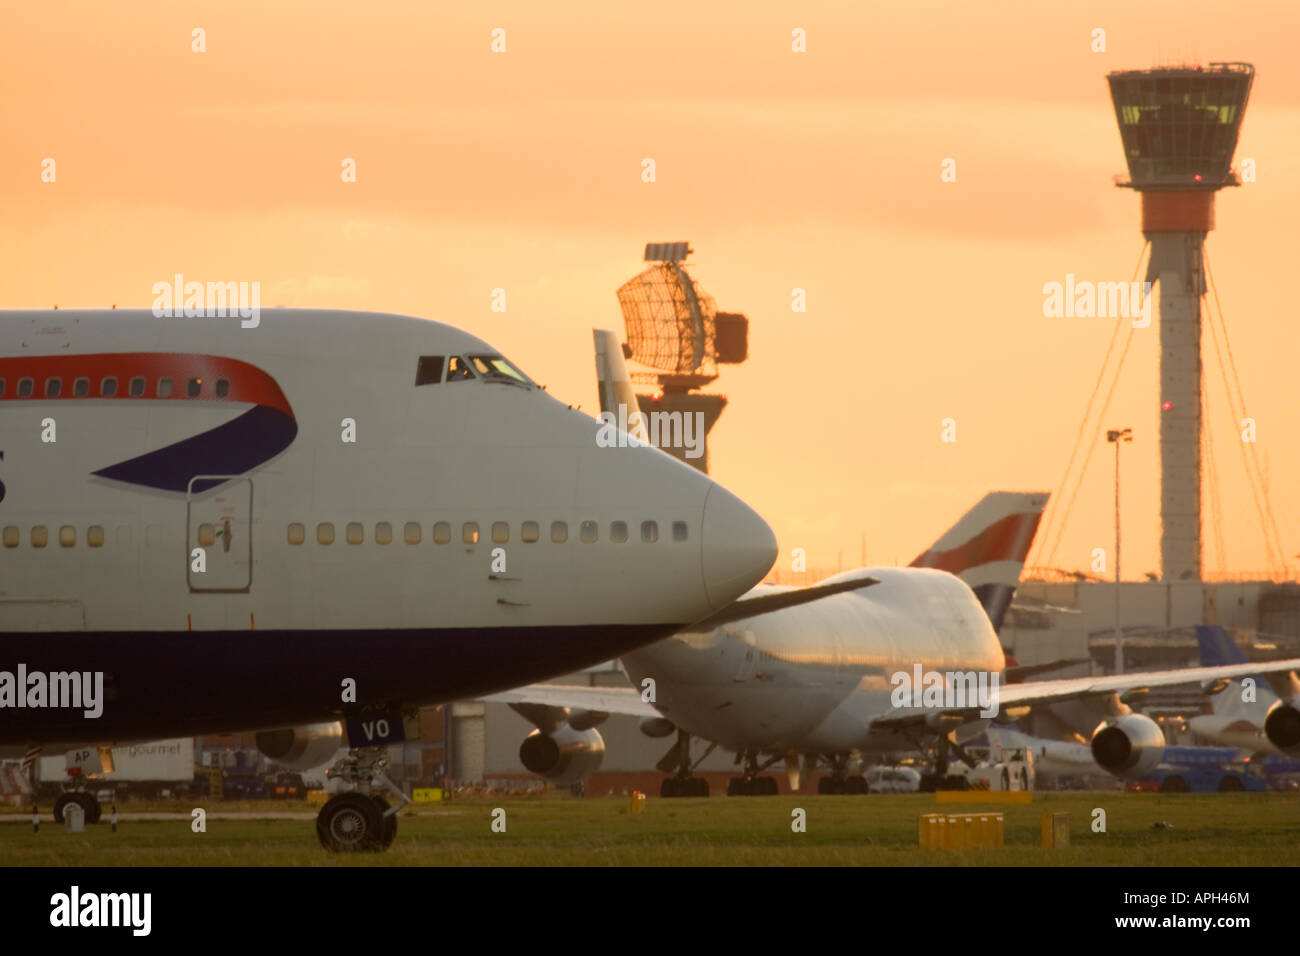 Des avions et des nouvelles tour de contrôle de la circulation aérienne à l'aéroport Heathrow de Londres Angleterre Royaume-uni Banque D'Images